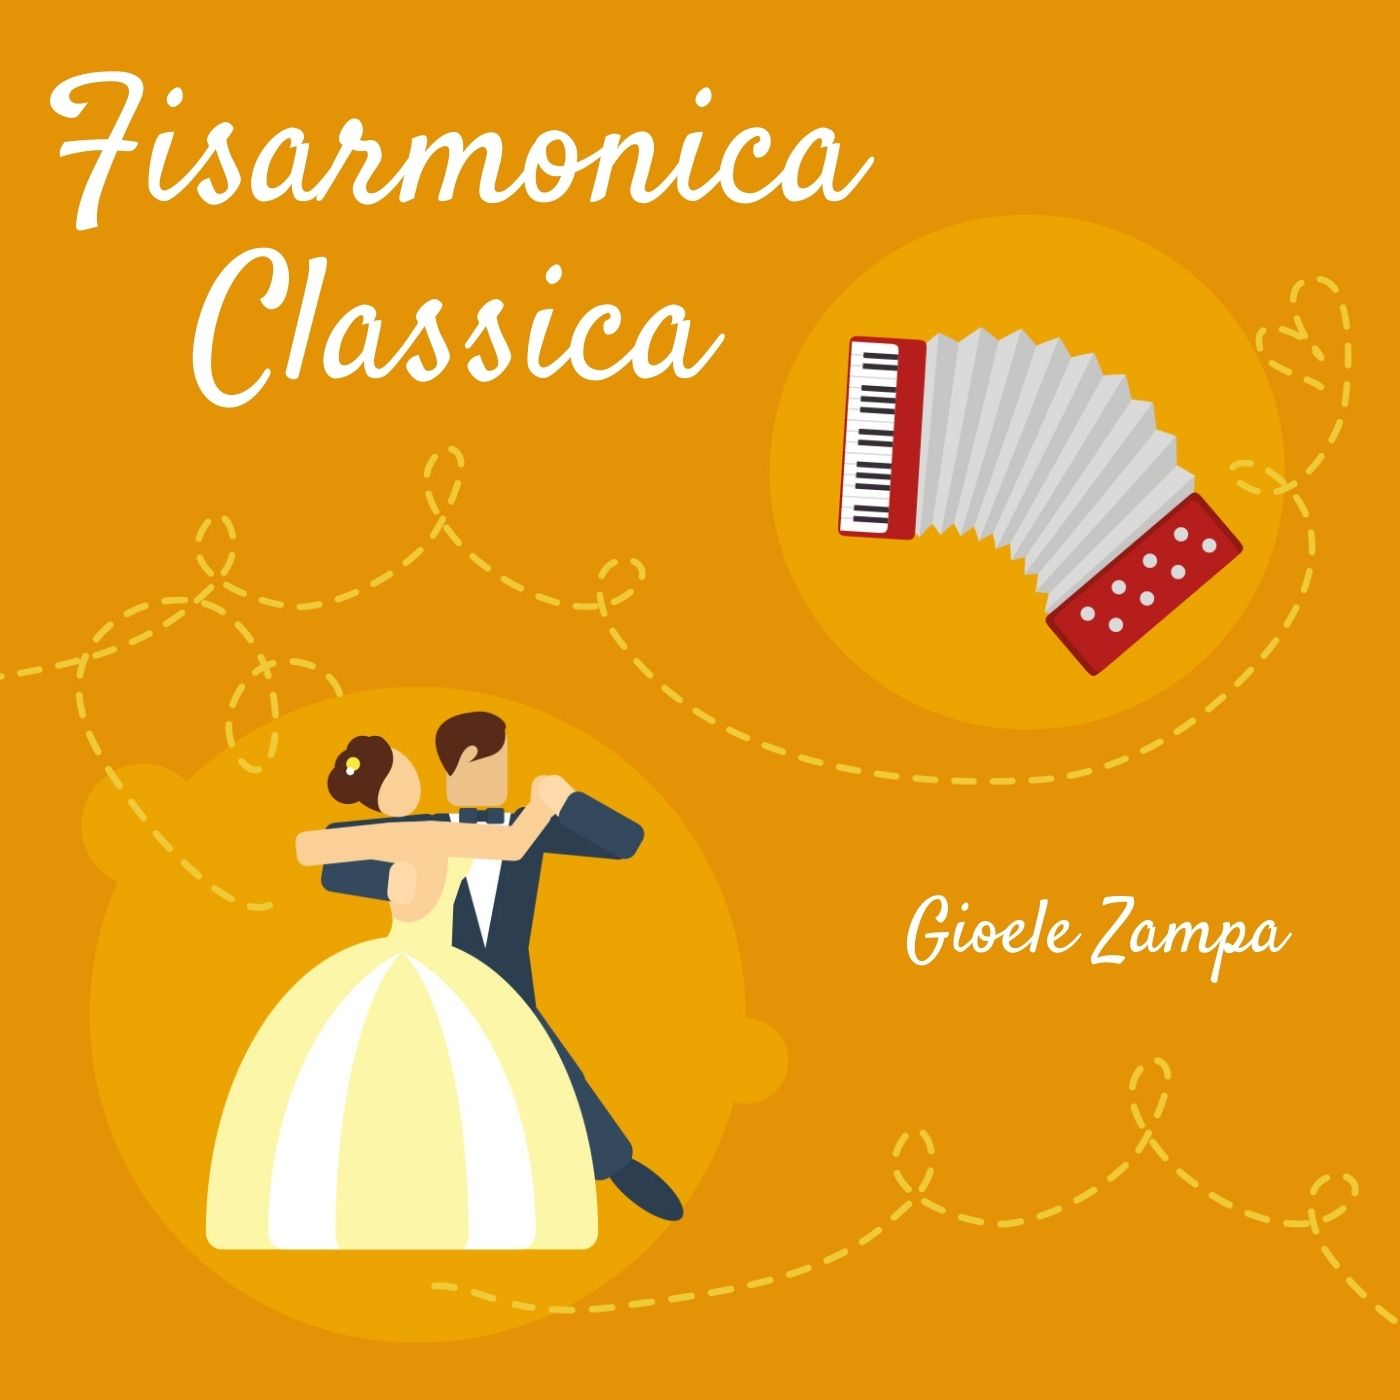 La Fisarmonica Classica